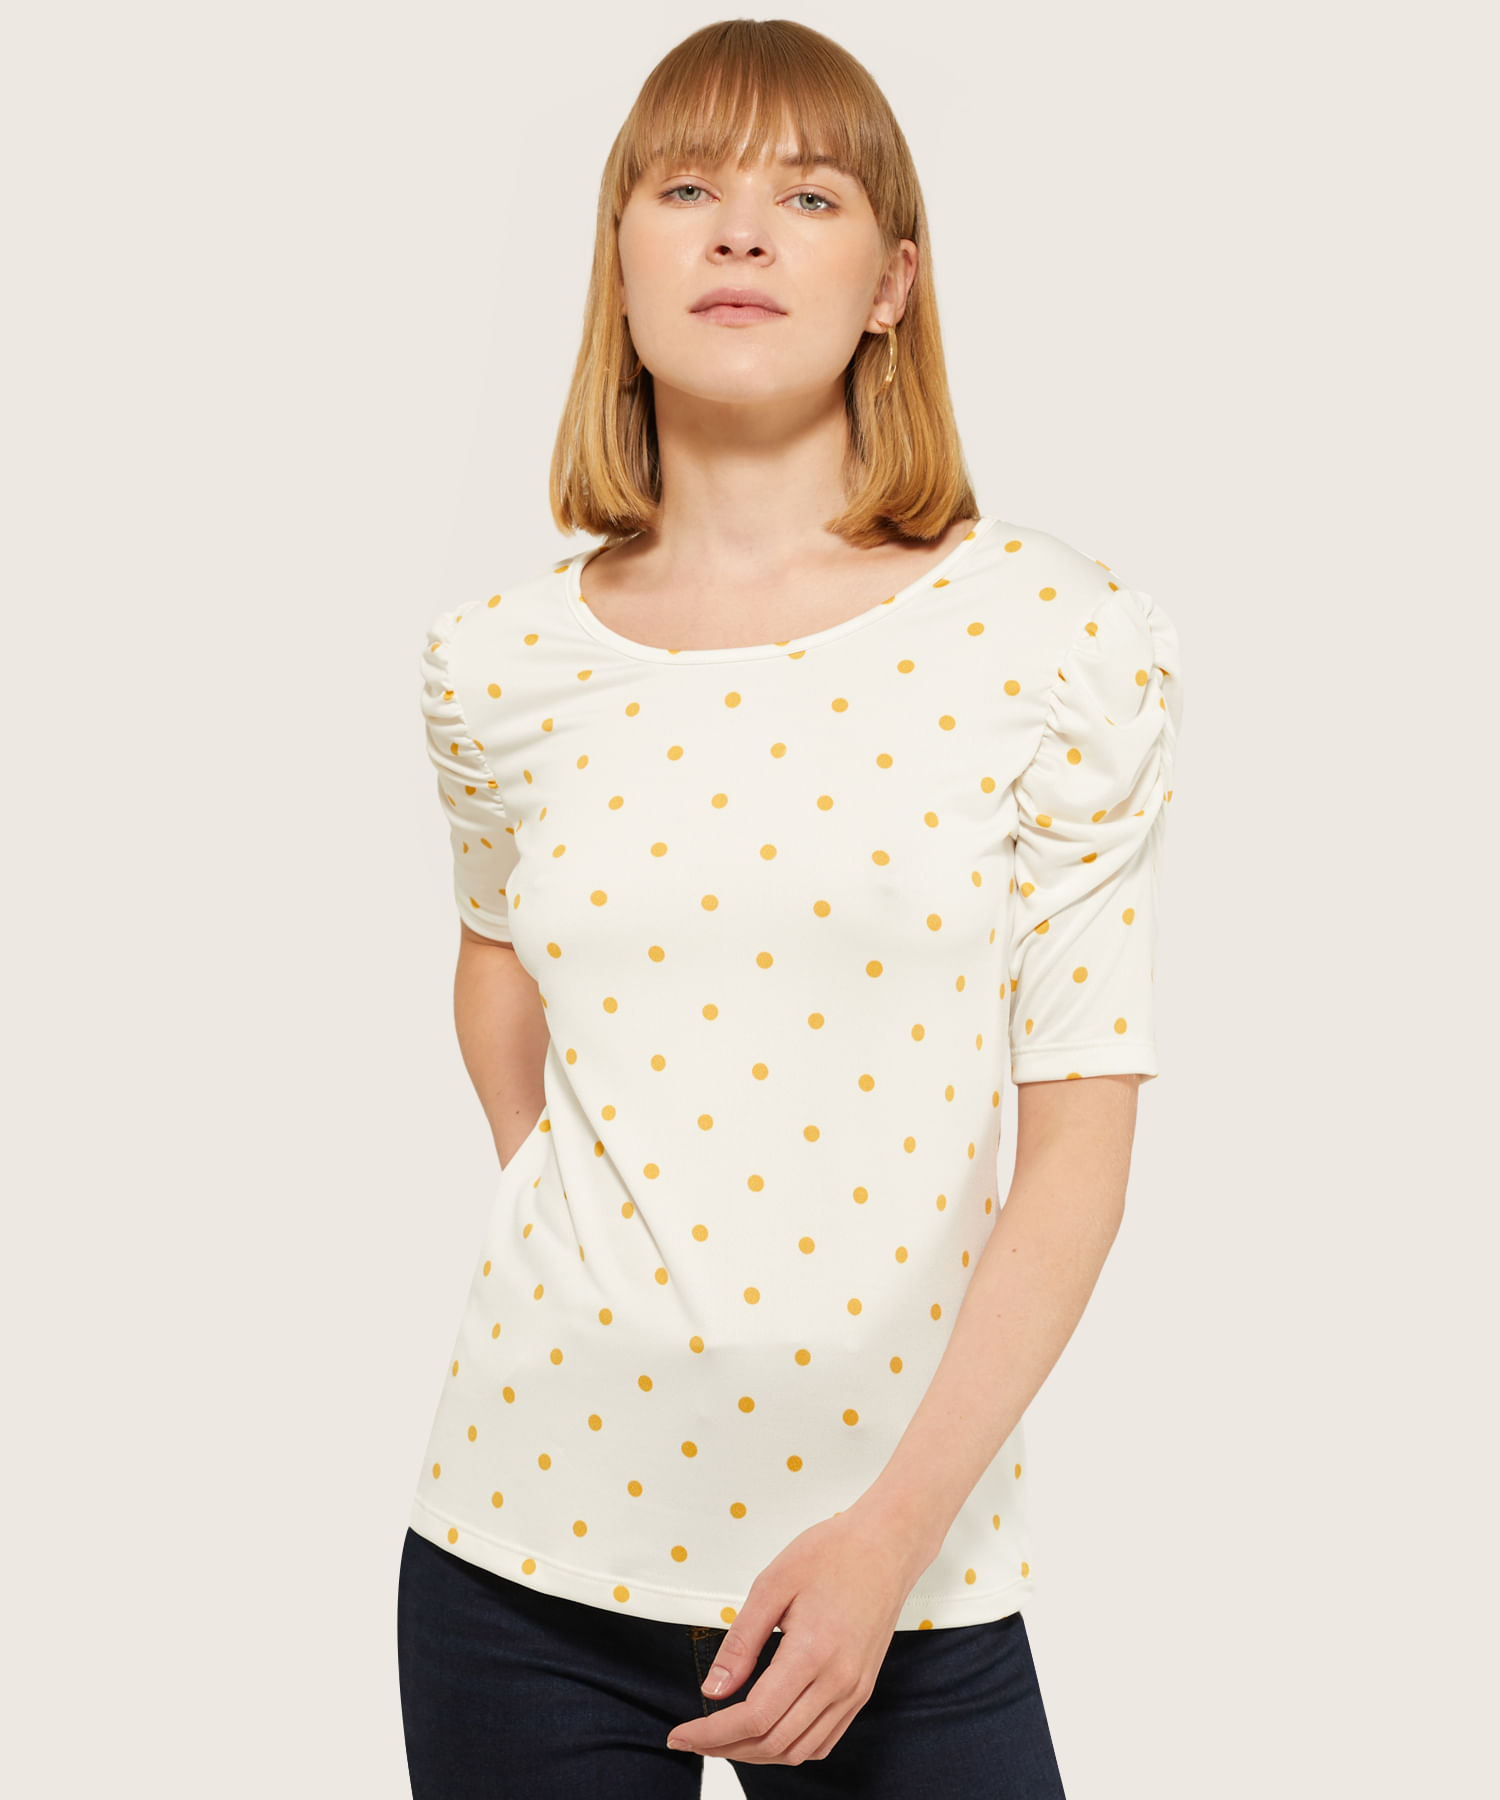 Camisetas Reductoras Mujer Blusa de Manga Corta con Estampado de